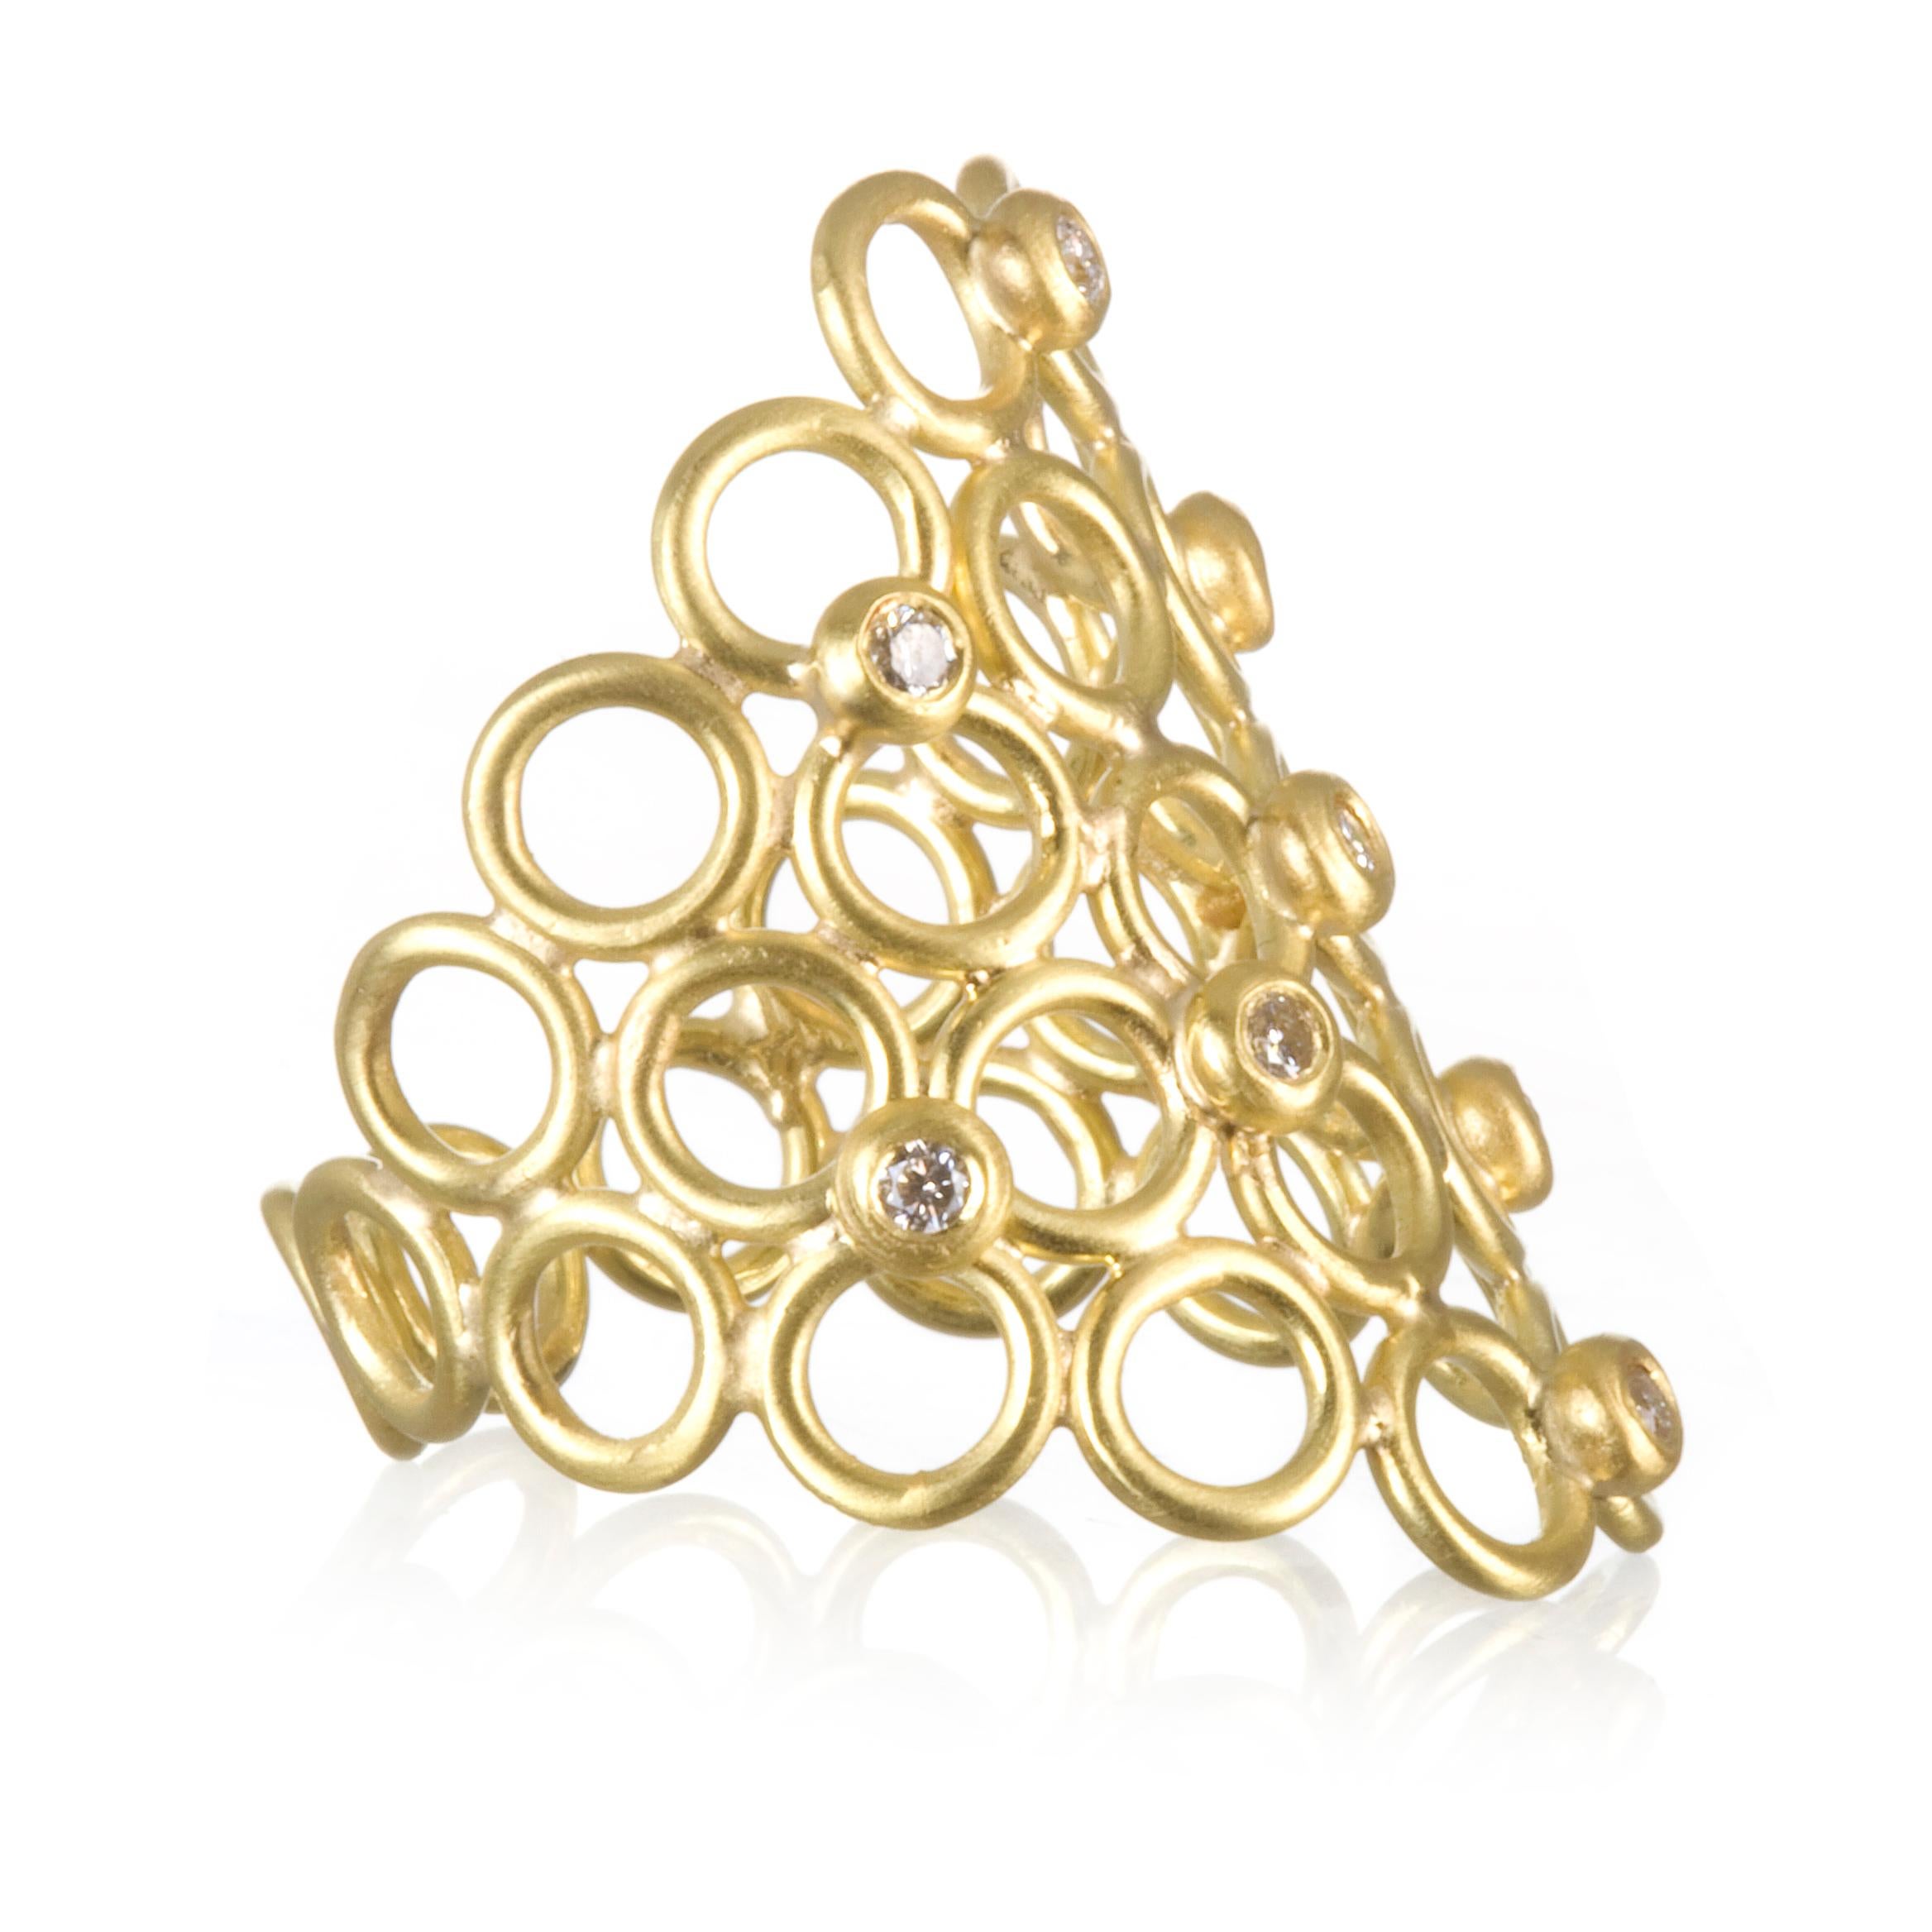 Faye Kim 18k Gold Diamant Mesh Cocktail Ring

Setzen Sie ein Zeichen mit diesem einzigartigen und wunderschönen handgefertigten Ring mit offenem, rundem Glied und Diamanten. Ein großer Look mit entsprechendem Komfort. Dieser Ring ist für  die